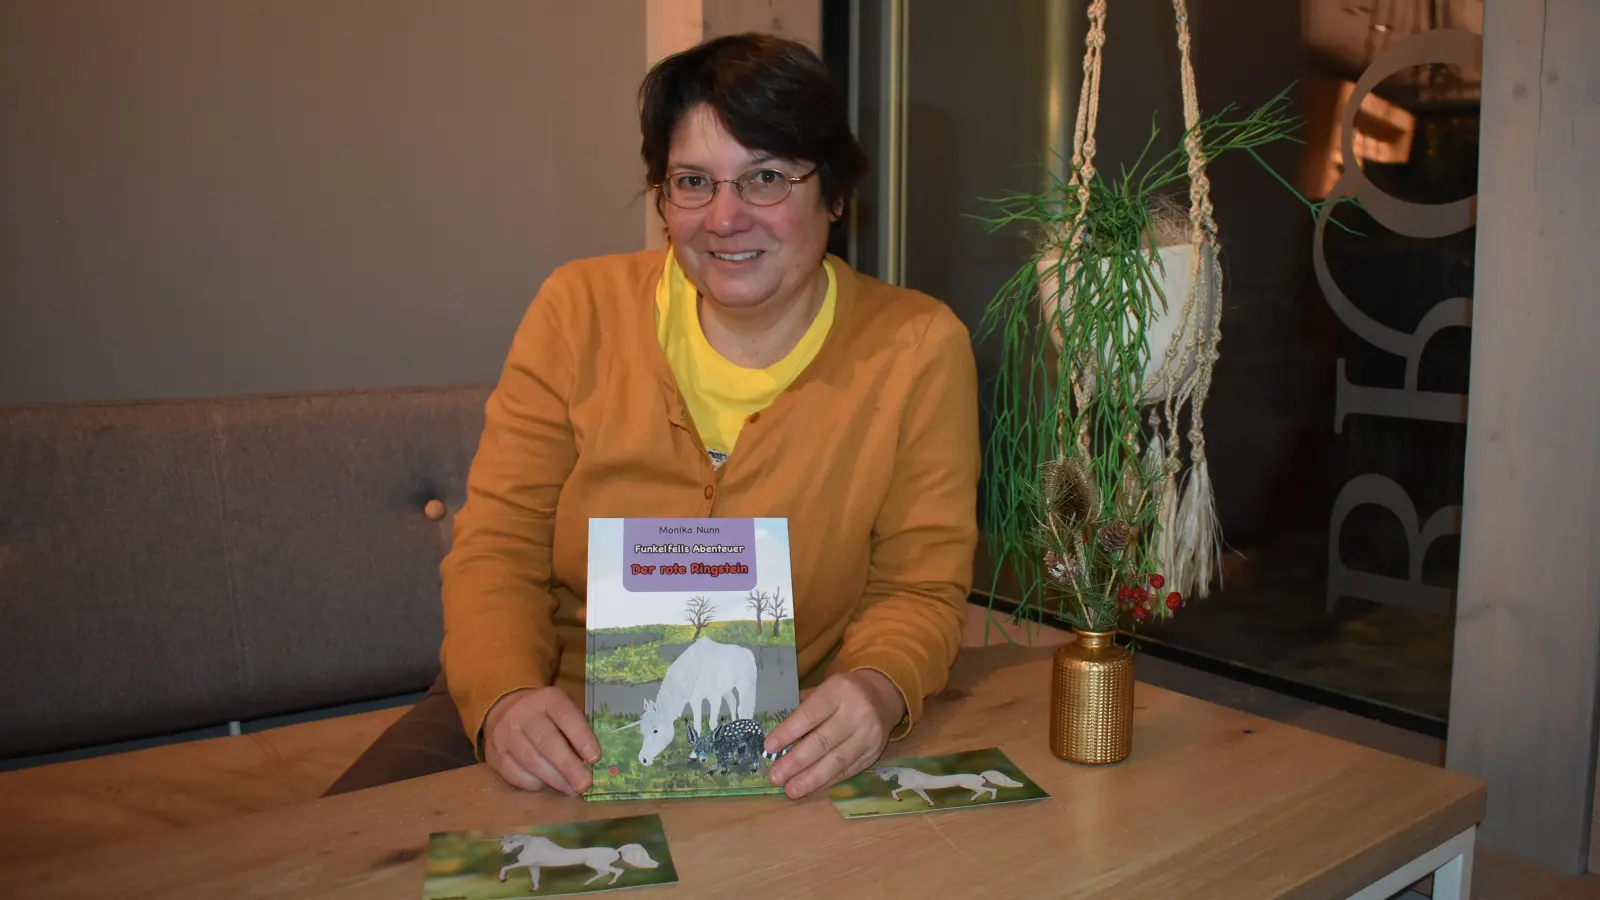 Die Biologin Moni Nunn hat ihr zweites Kinderbuch geschrieben. Es ist Teil einer Reihe, in der das Einhorn Funkelfell und seine Freunde so manches Abenteuer erleben. (Foto: Ute Niephaus)